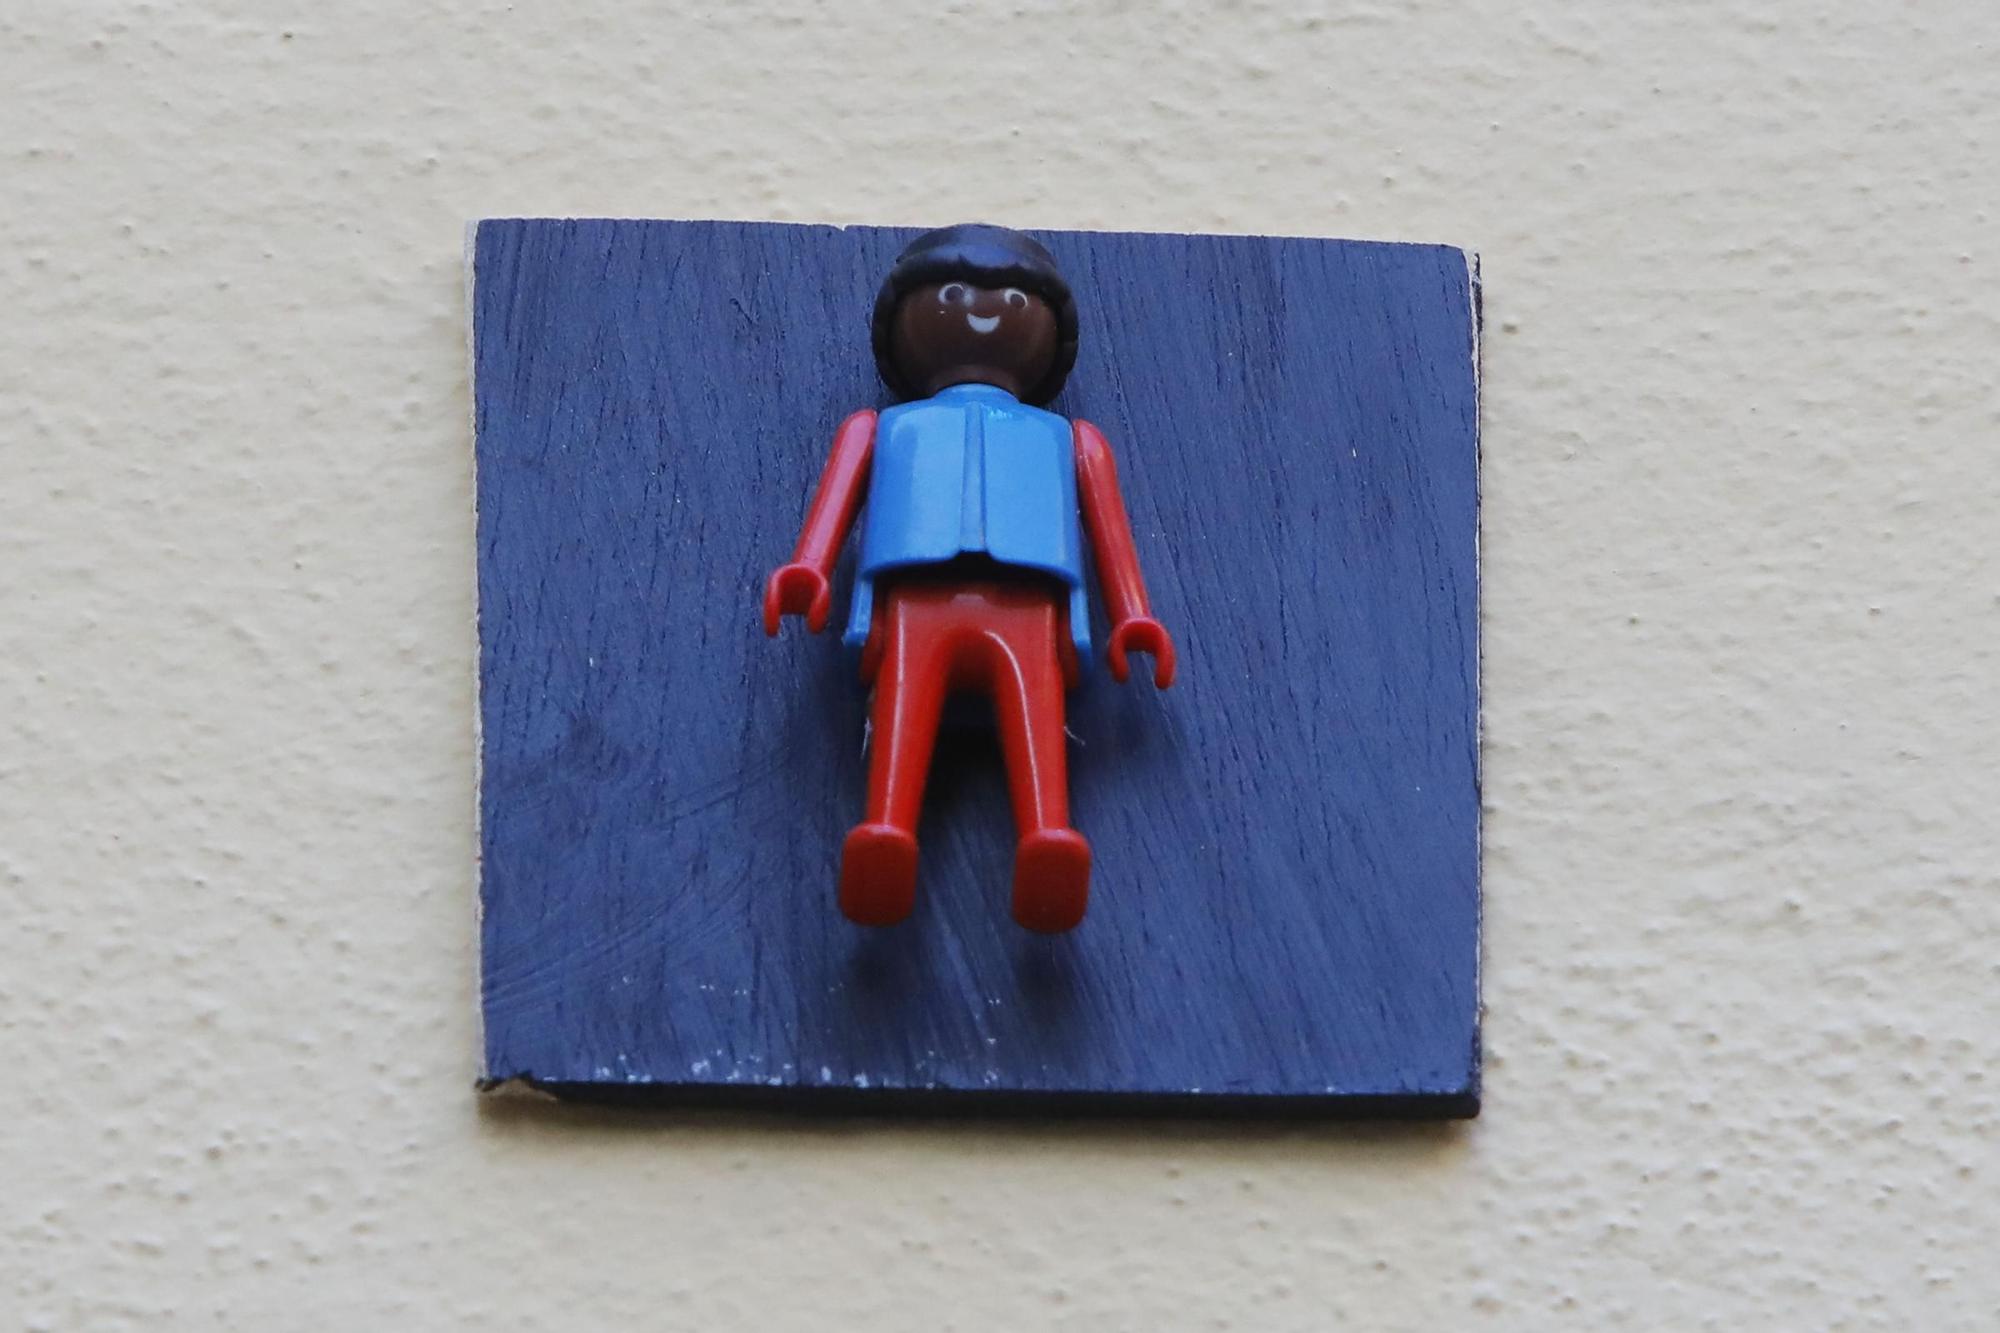 Figuras de Playmobil adornan las placas de calles en el centro de València